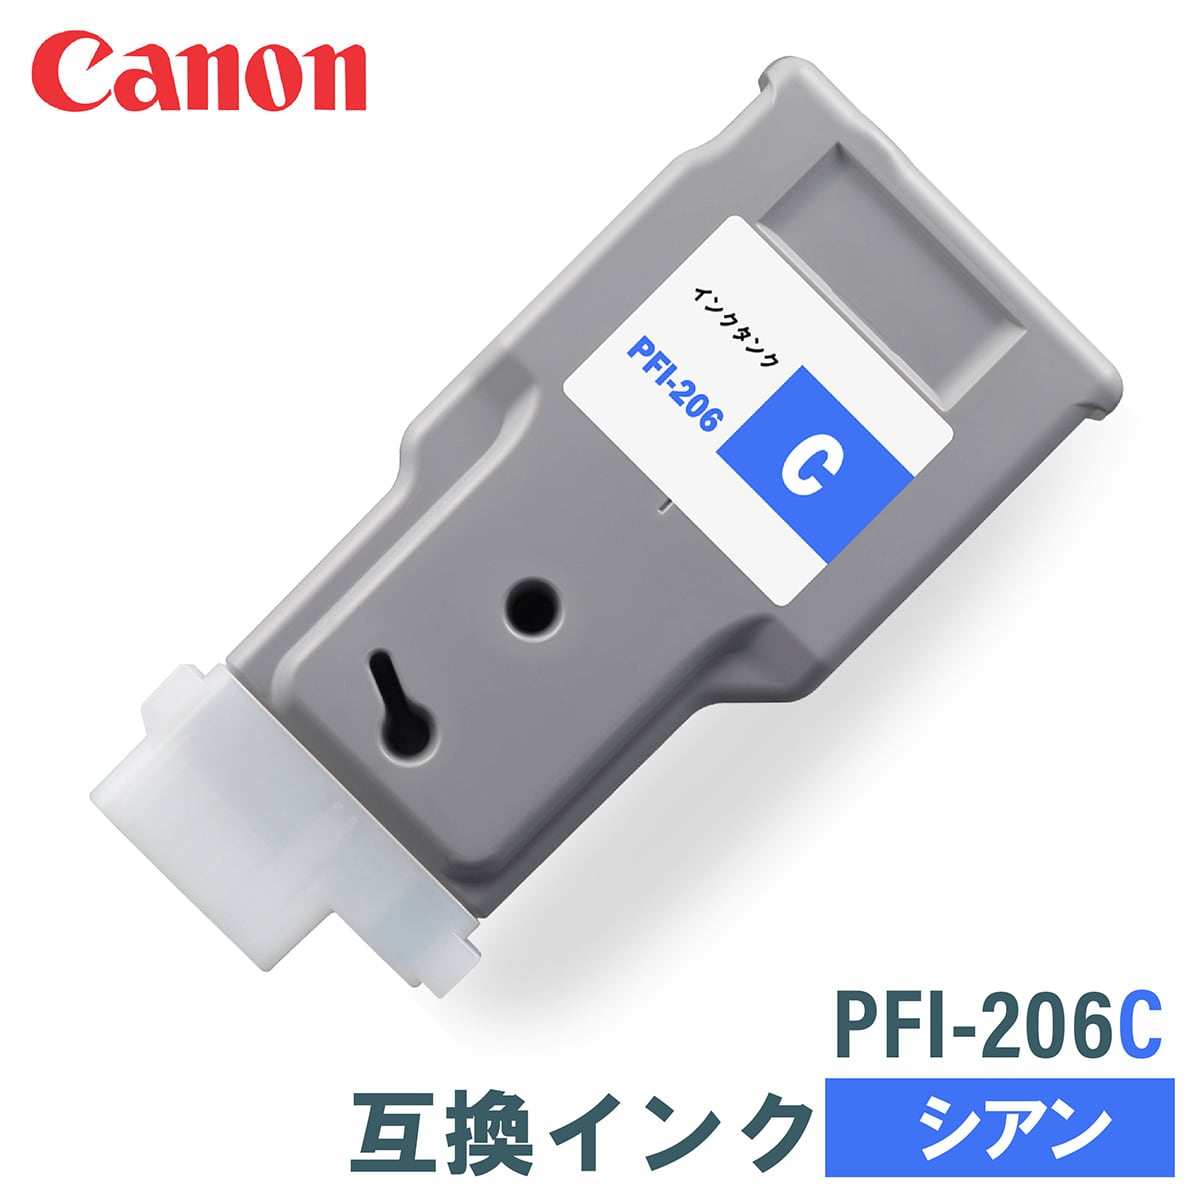 キヤノン 互換インク CANON PFI-206C シアン 300ml 互換インク、ロール紙販売のPRINKS(プリンクス)